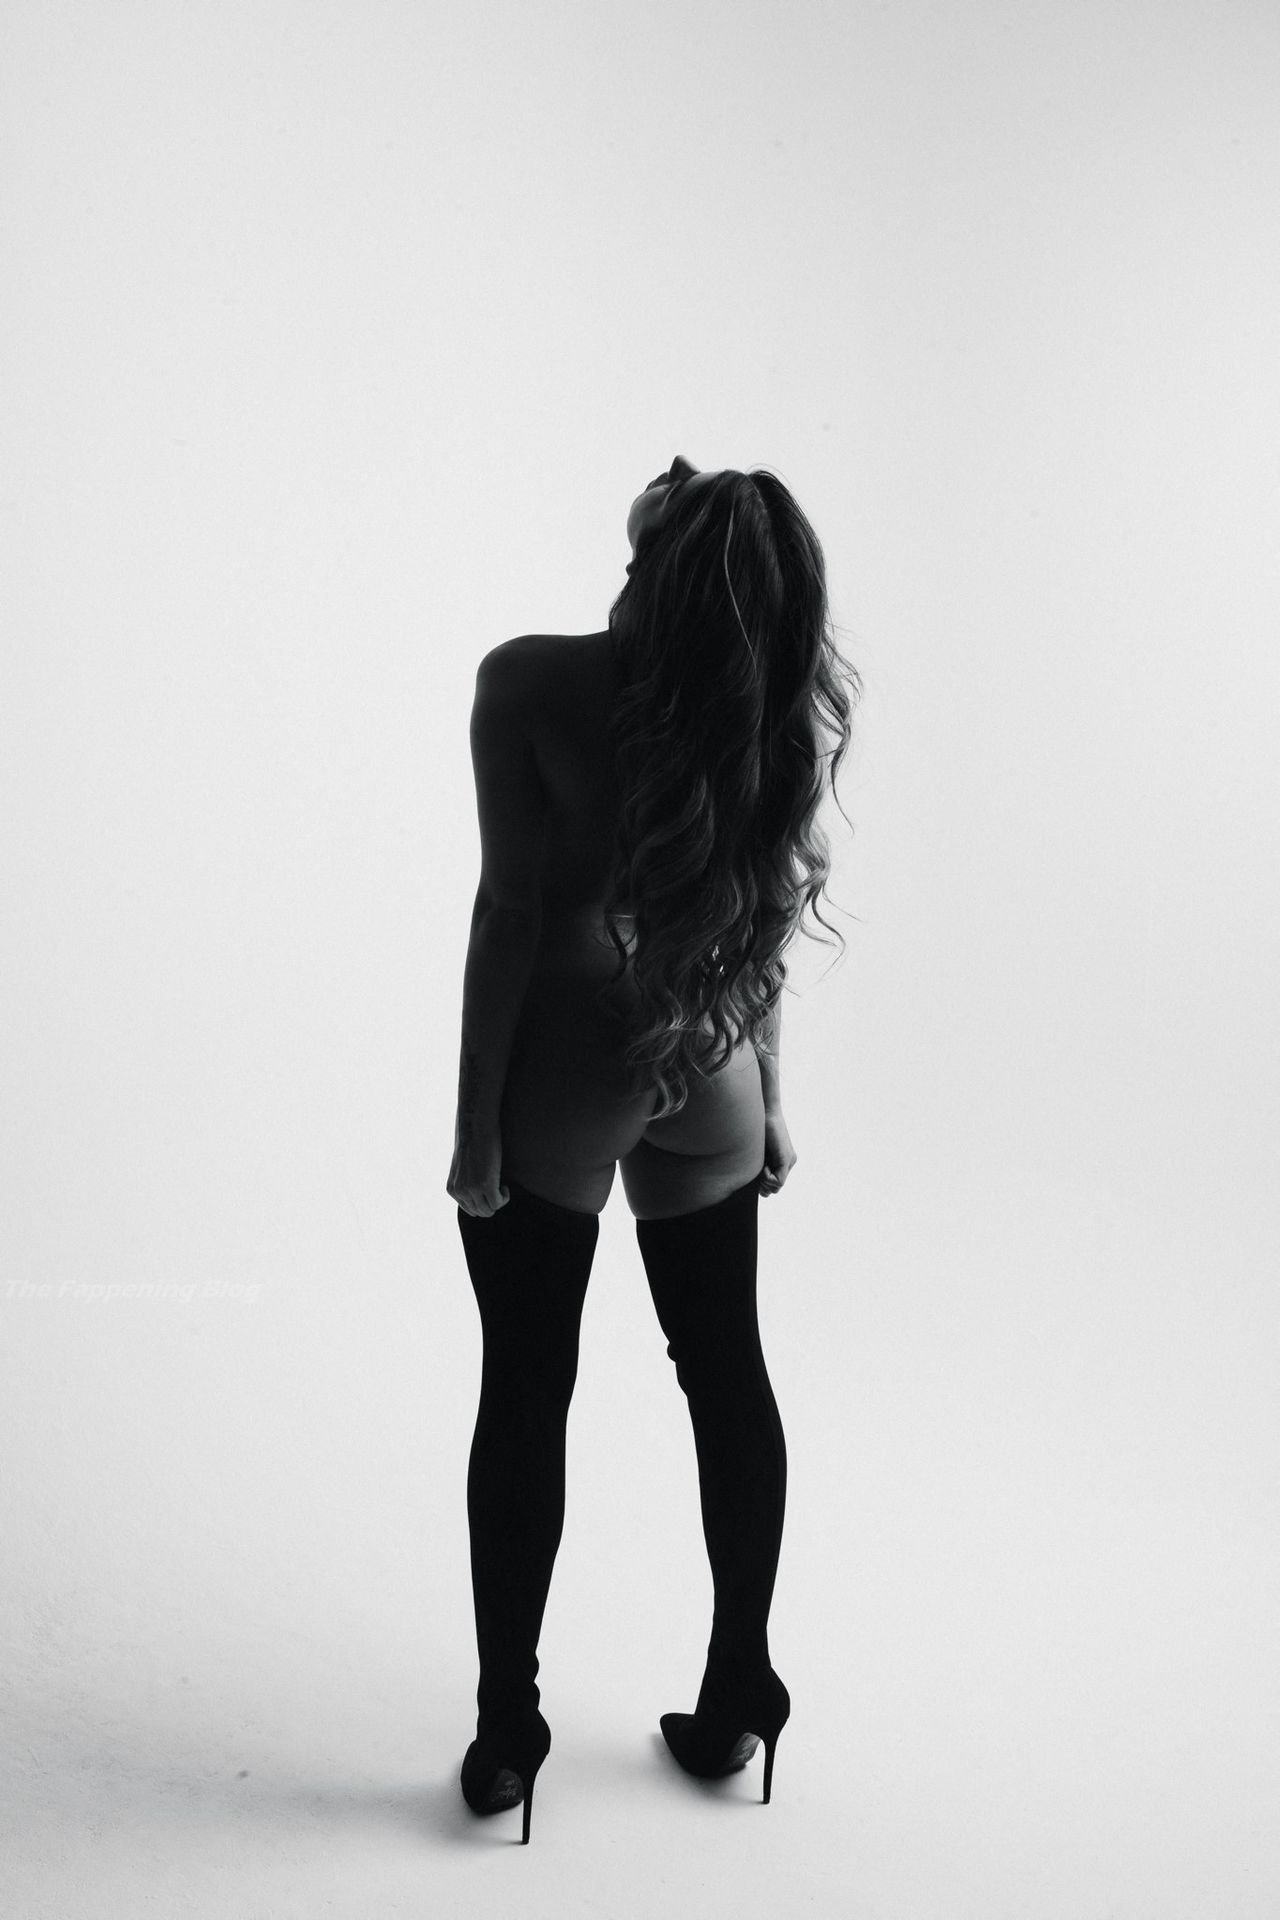 Shannon Singh (Alexa Campbell) Nude & Sexy Collection (53 Photos)